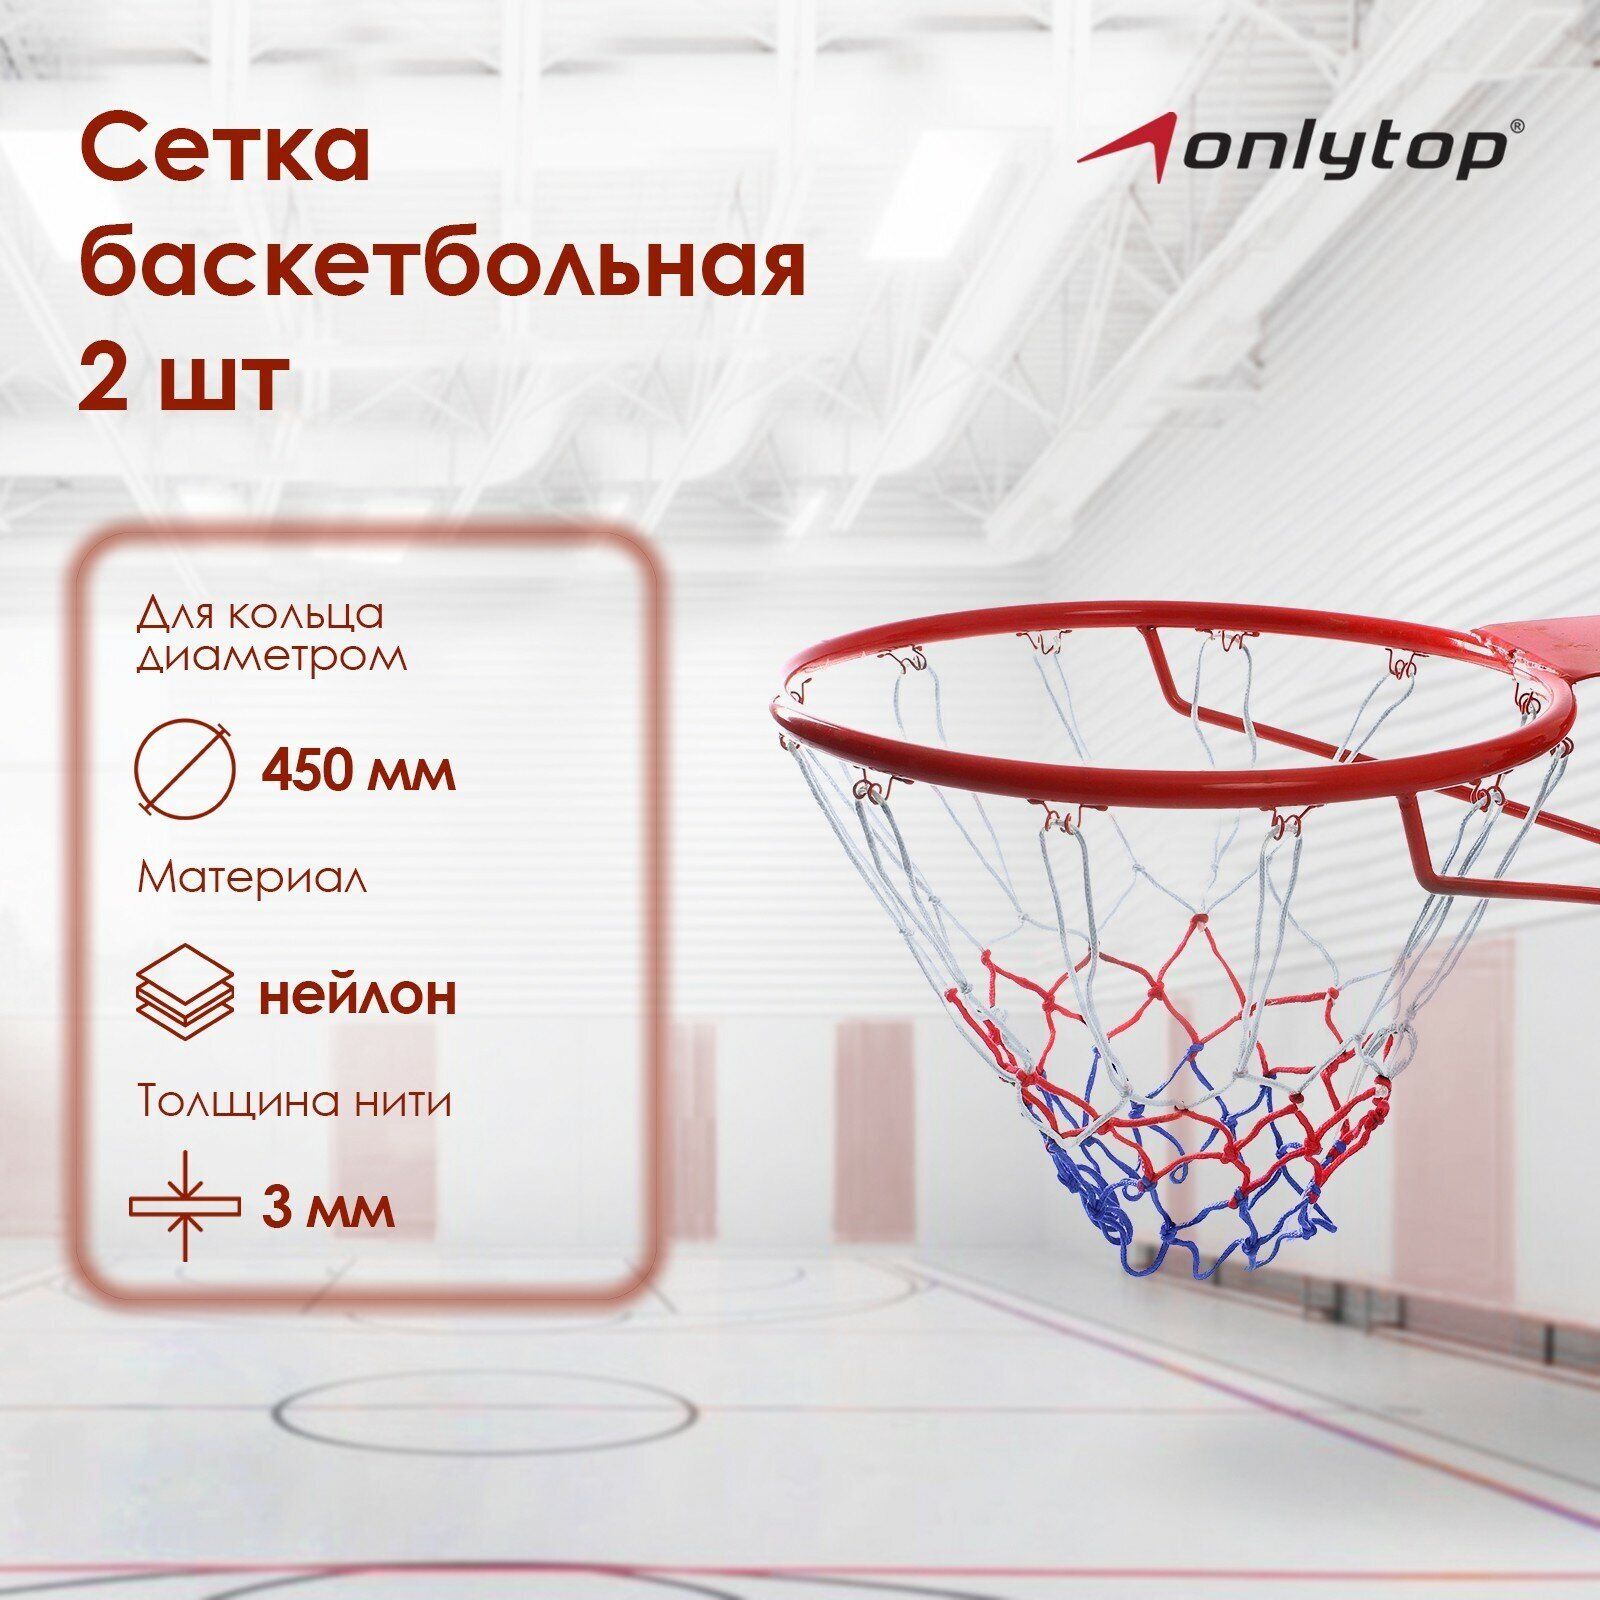 Сетка ONLITOP баскетбольная «Триколор», нить 3 мм, (2 шт)